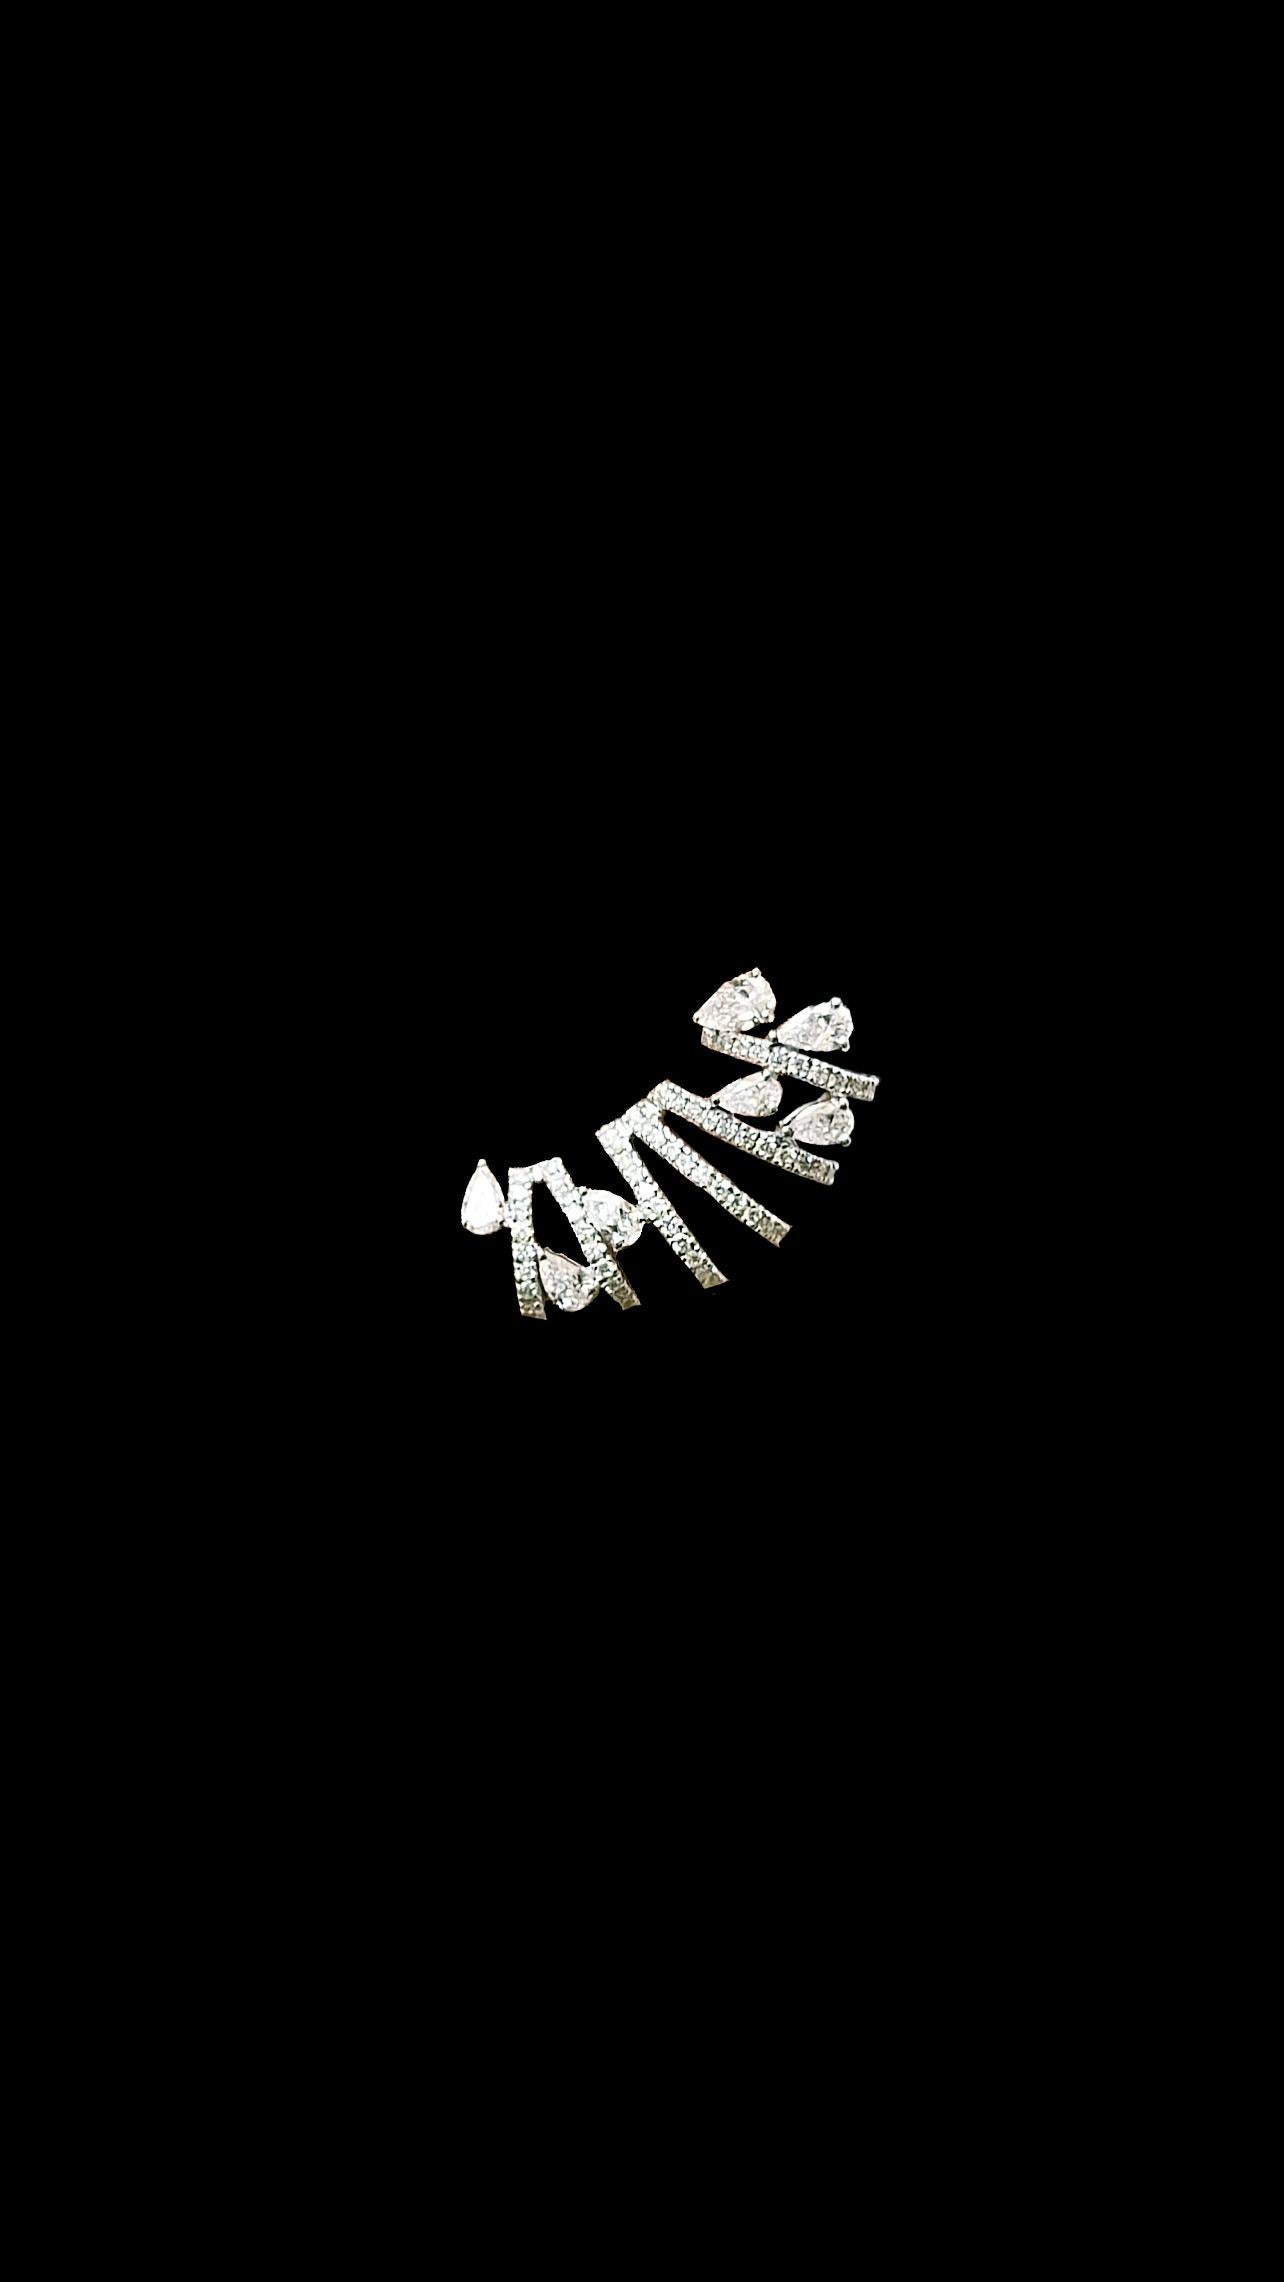 Wir stellen unsere exquisiten Diamantohrringe aus 18 Karat Weißgold vor, eine perfekte Mischung aus Raffinesse und Vielseitigkeit für legere und elegante Anlässe. Diese bezaubernden Ohrringe zeichnen sich durch eine harmonische Kombination aus